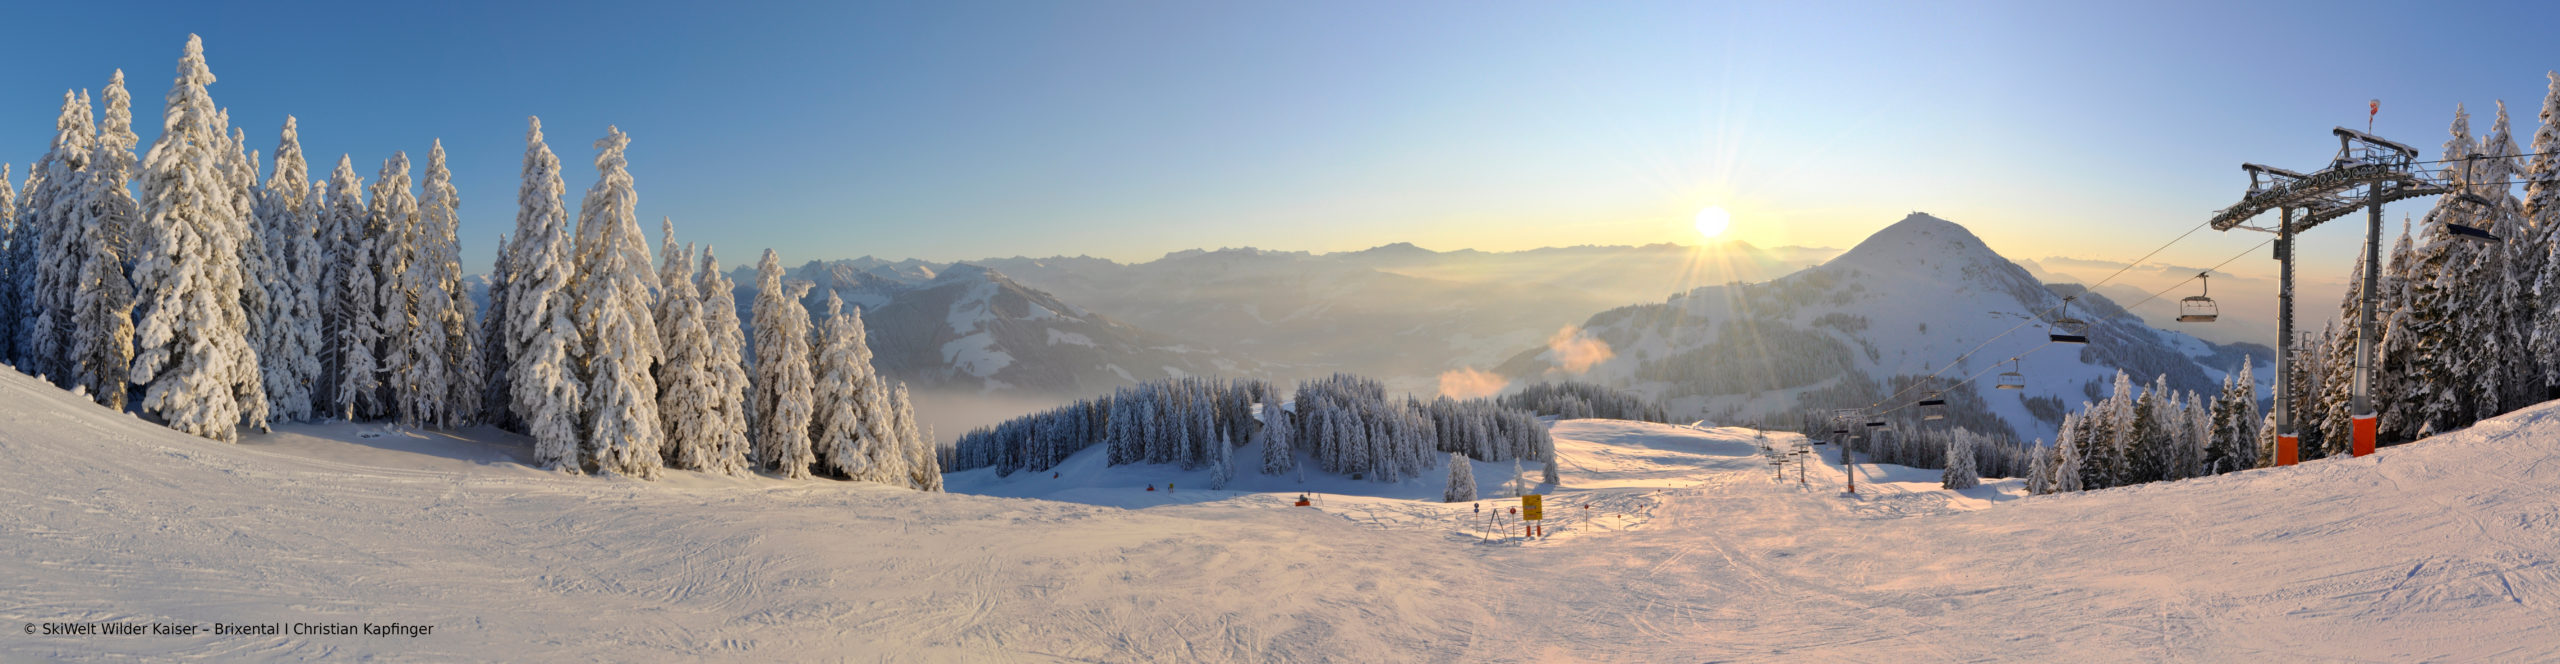 SCHEFFAU – SKIWELT WILDER KAISER –  SchneeSpaßTag in eines der größten Skigebiete Österreichs 